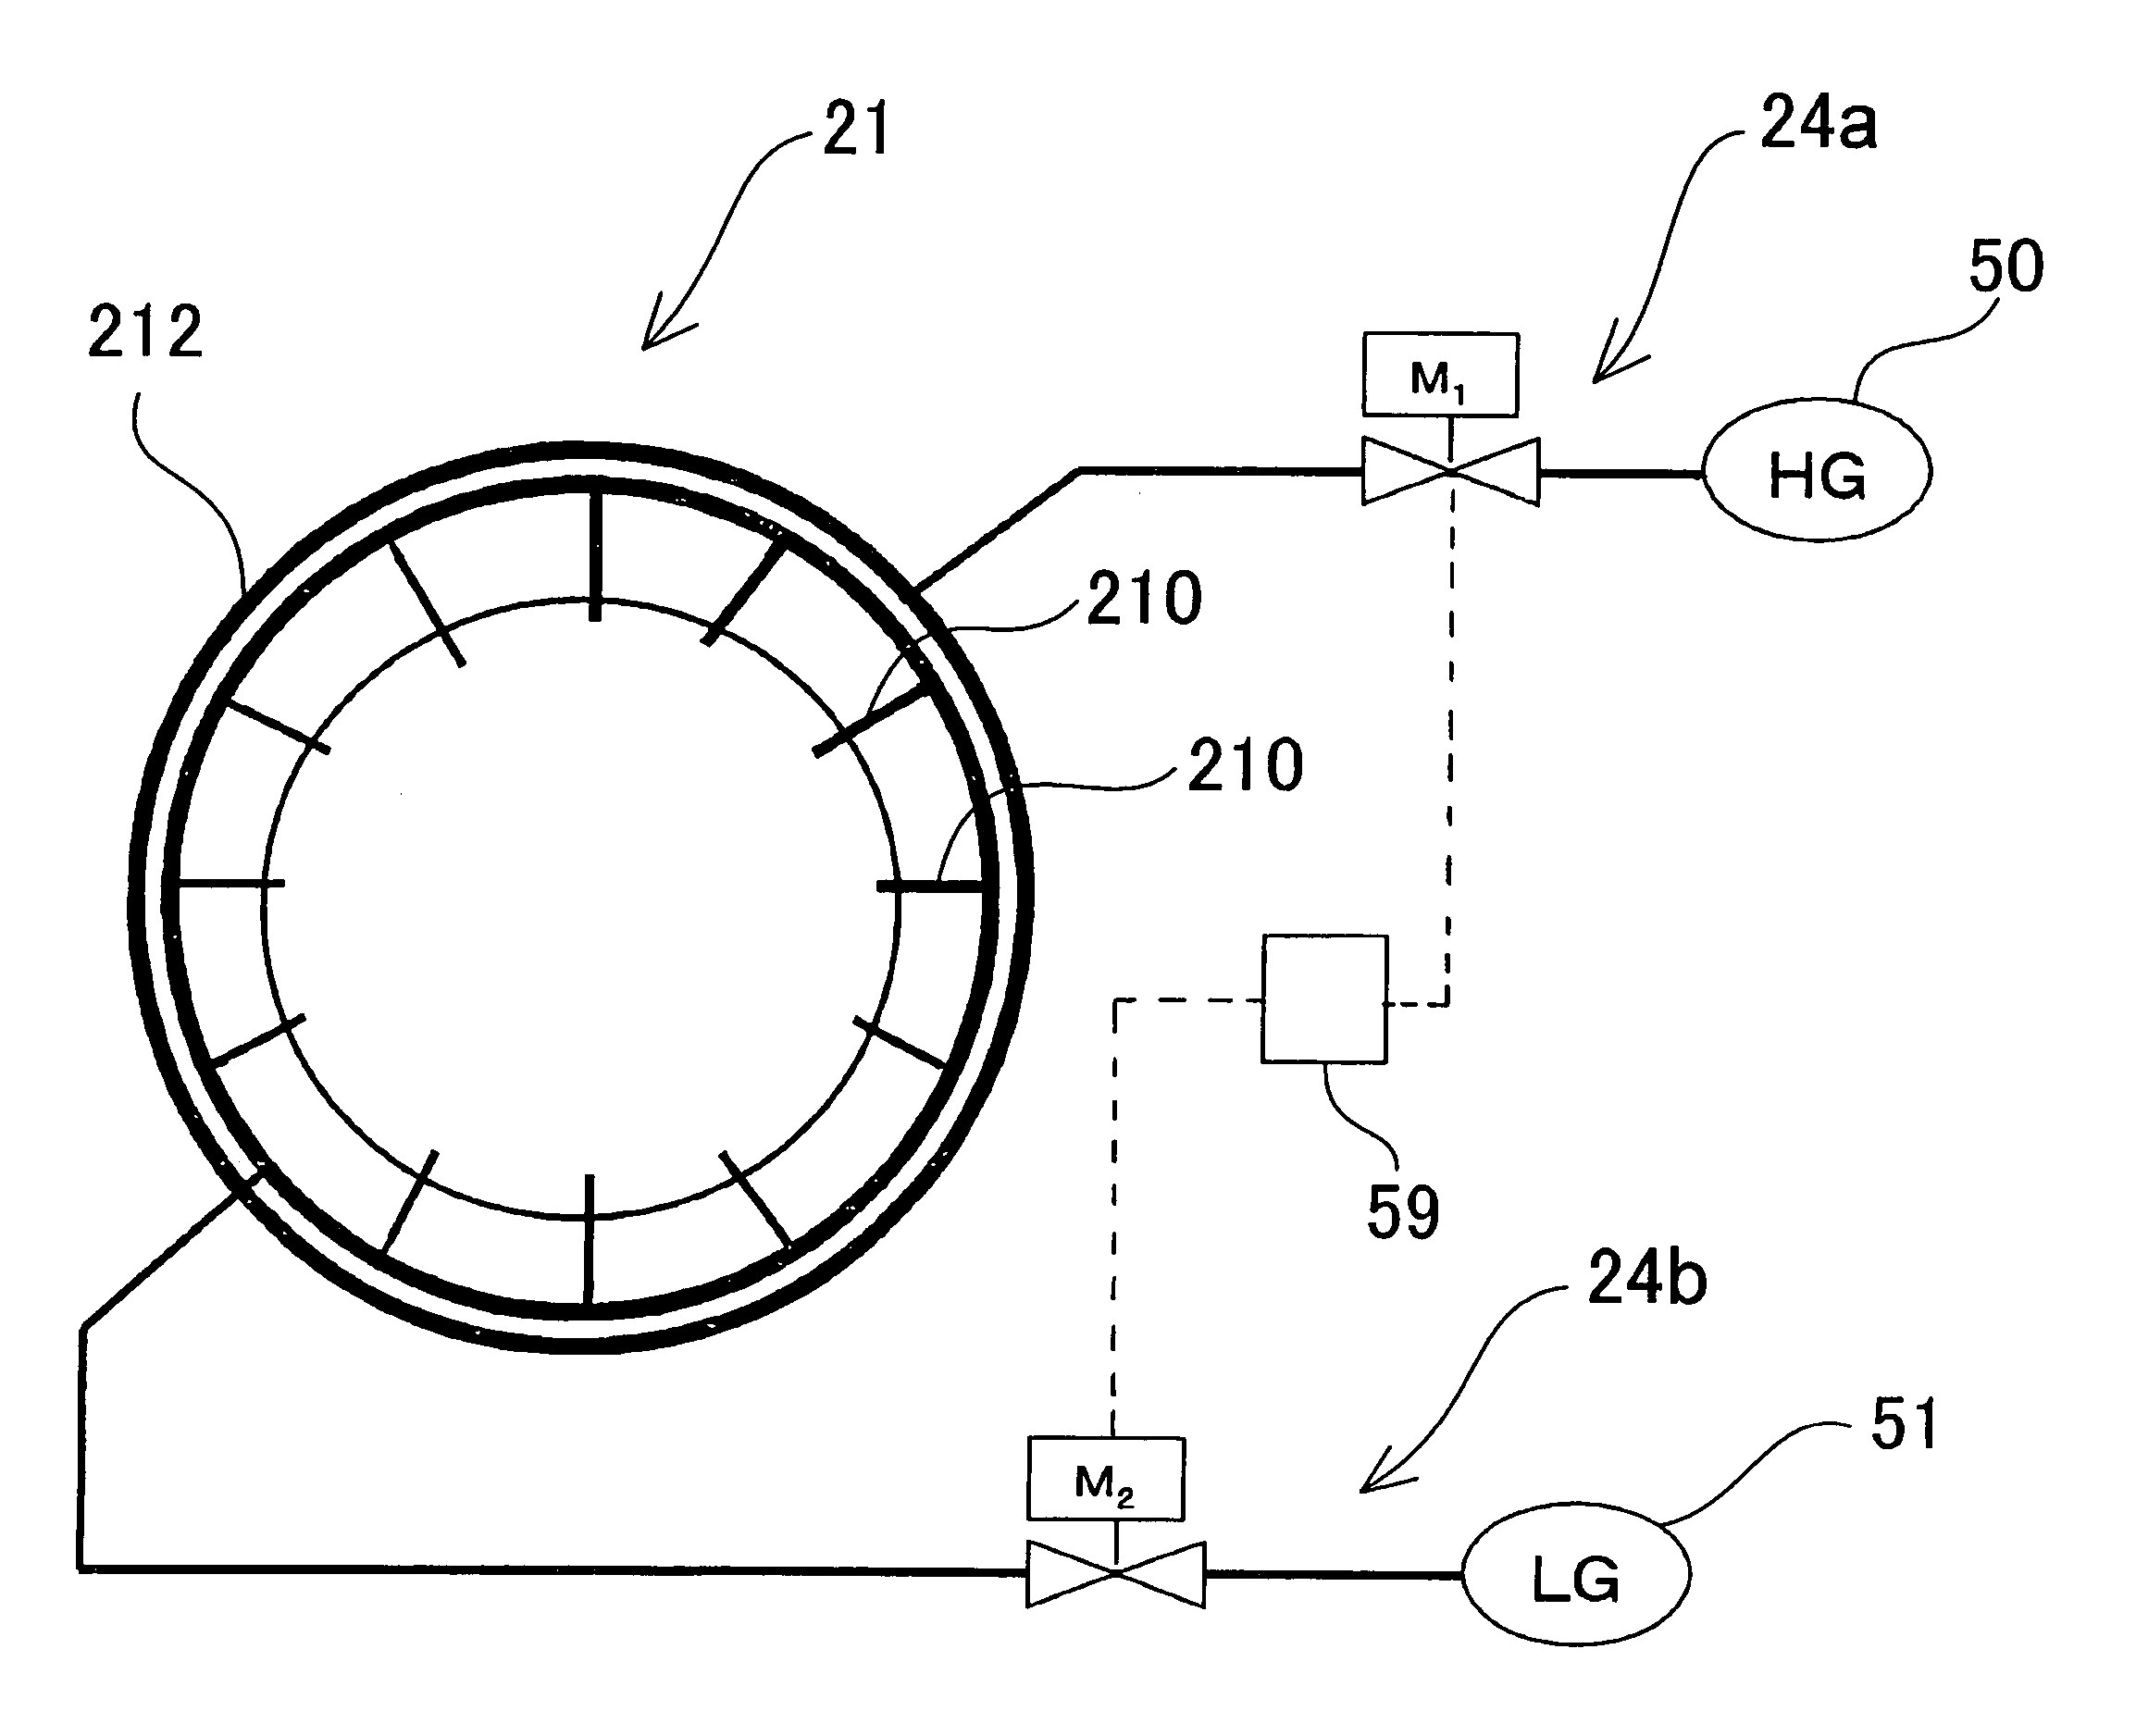 Gas turbine apparatus